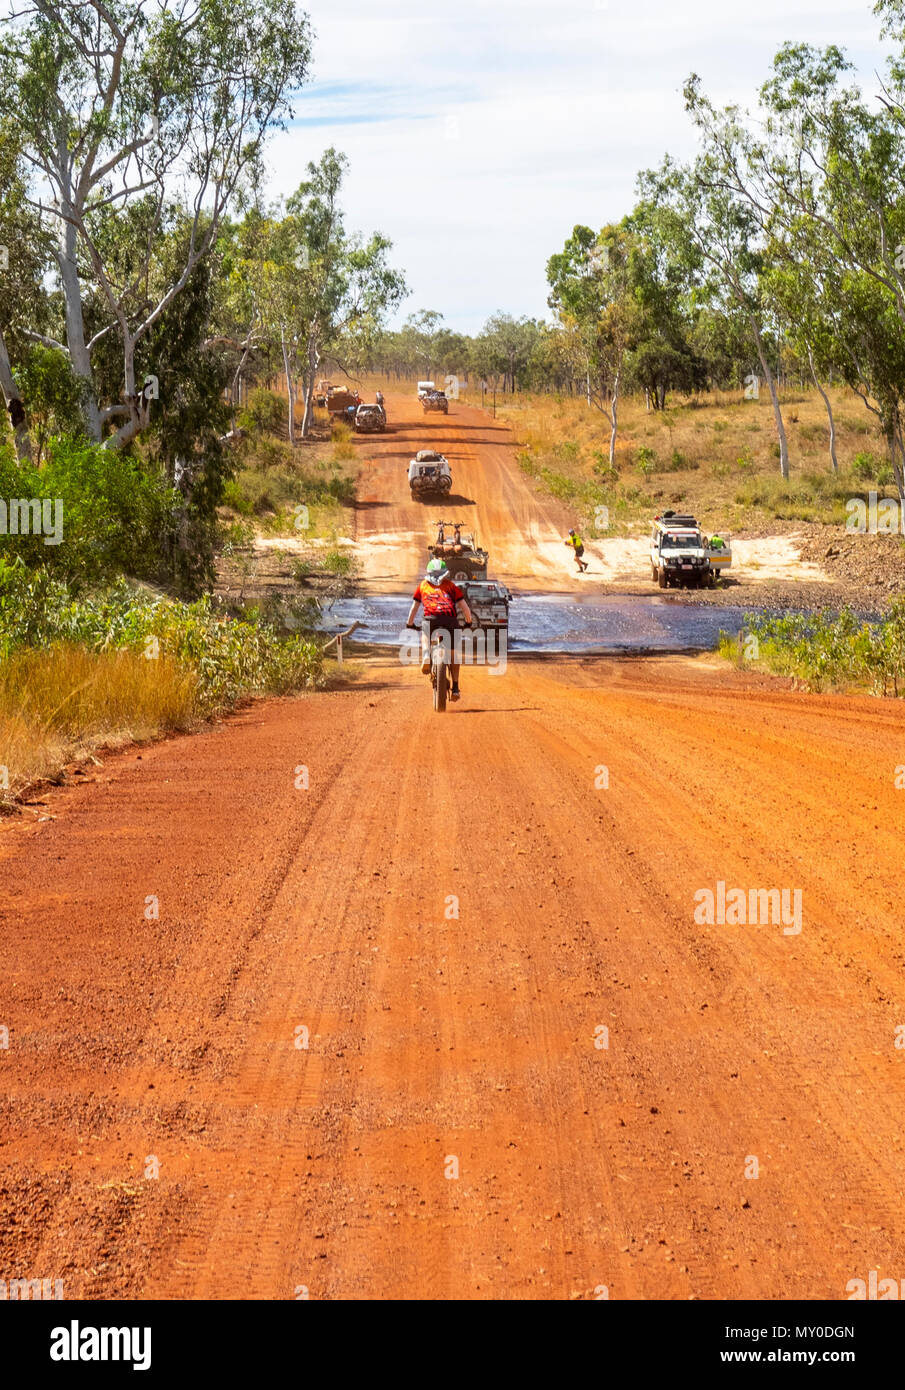 Un cycliste, équitation un vélo dans un fatbike River Crossing, dans le Défi 2018 Gibb sur la Gibb River Road WA Kimberley Australie Banque D'Images